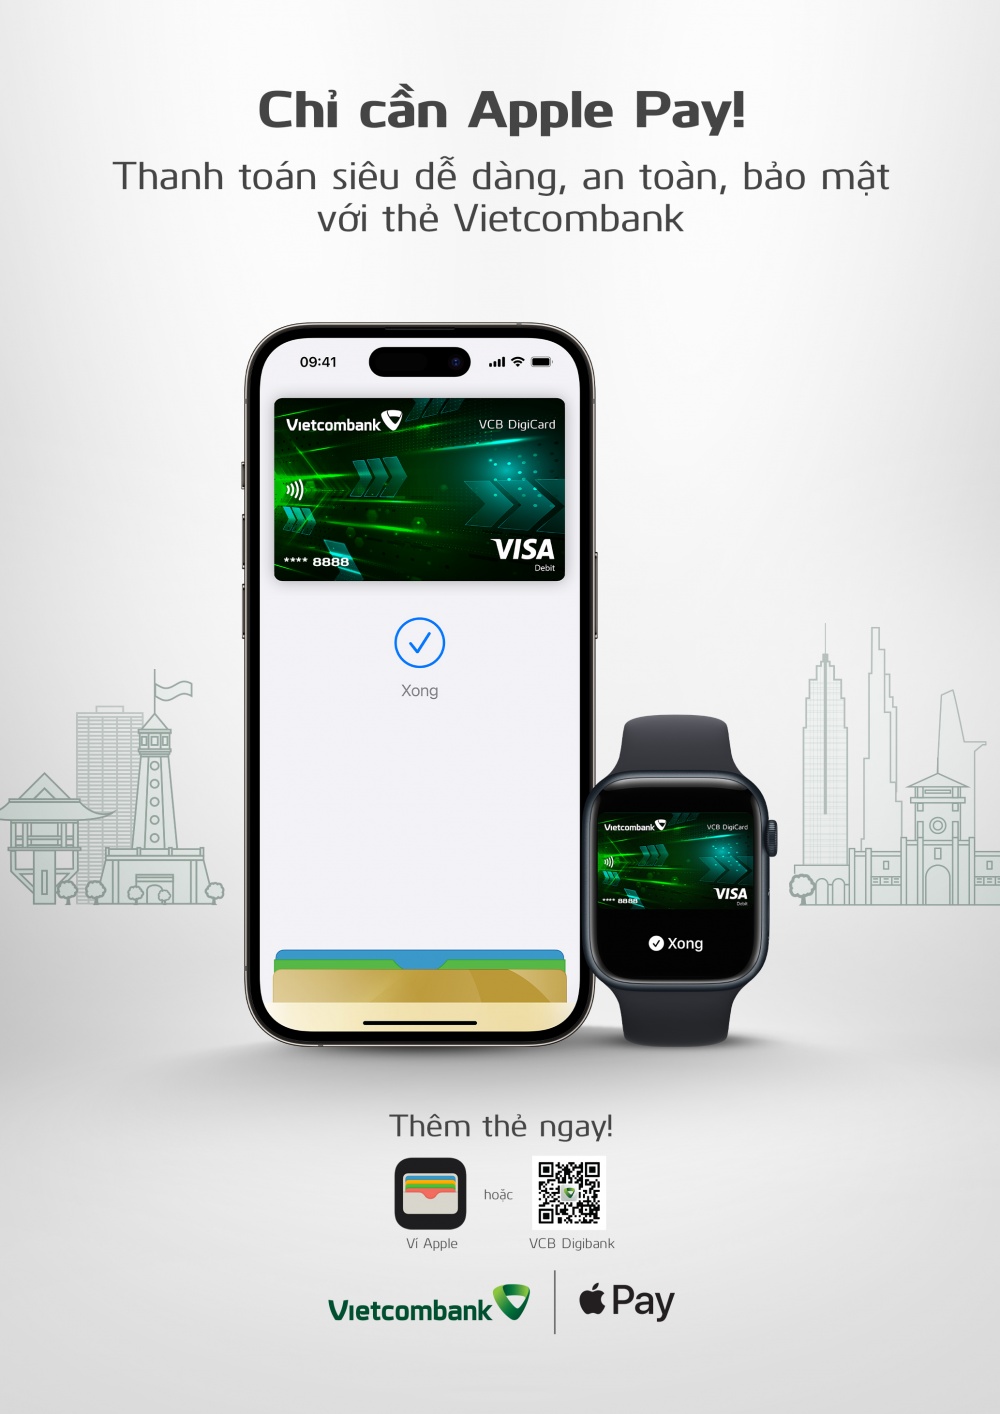 Vietcombank giới thiệu Apple Pay đến khách hàng